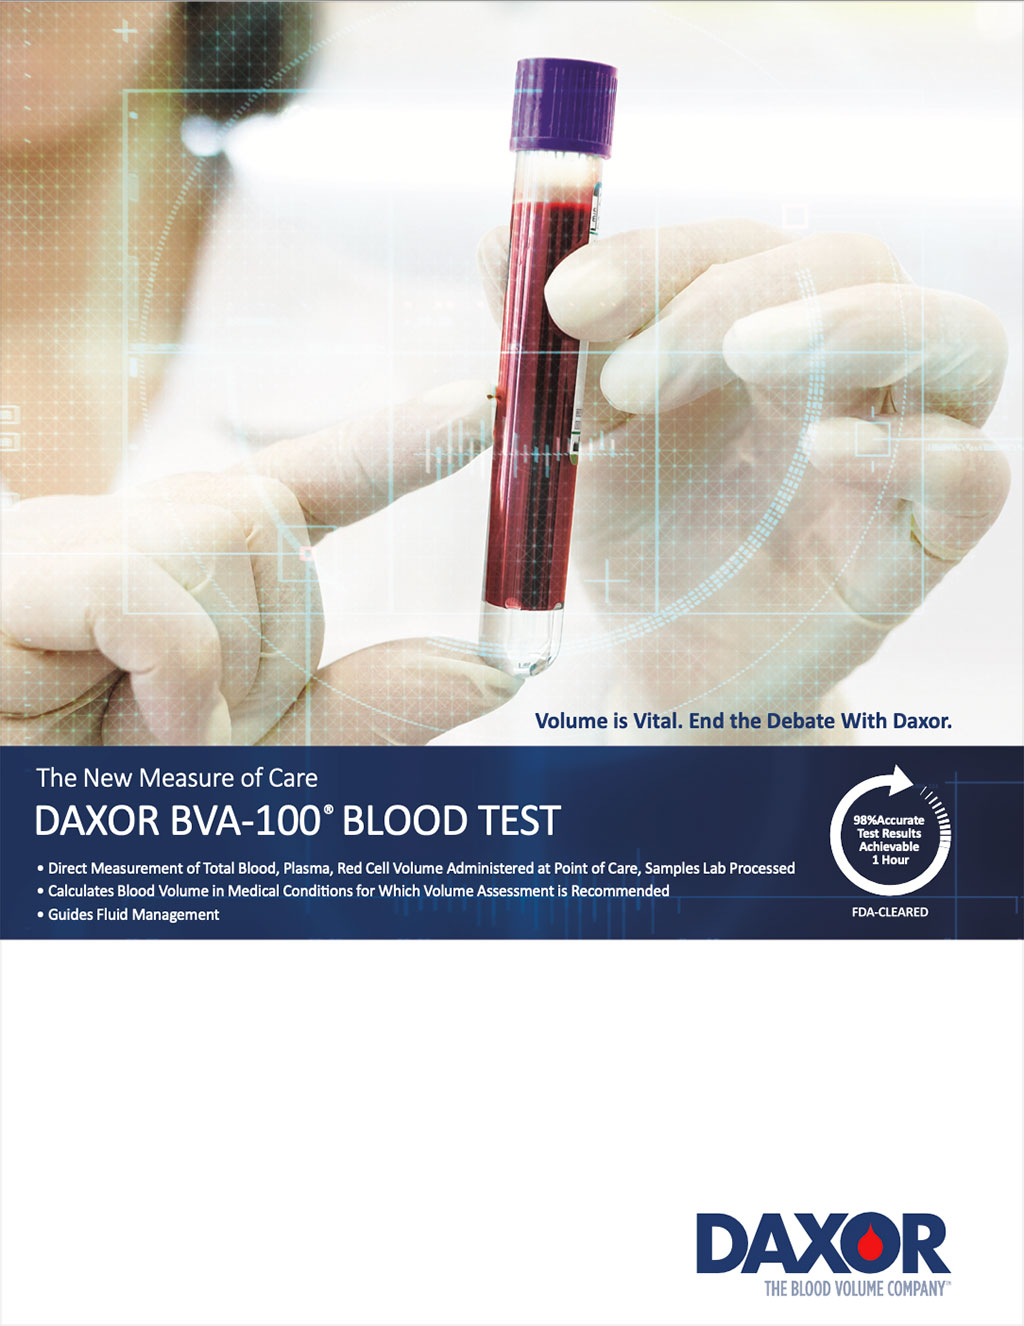 Imagen: Los nuevos datos muestran que el tratamiento de insuficiencia cardíaca guíado por el BVA-100 de Daxor reduce la estancia hospitalaria en un 55 % (Fotografía cortesía de Daxor)